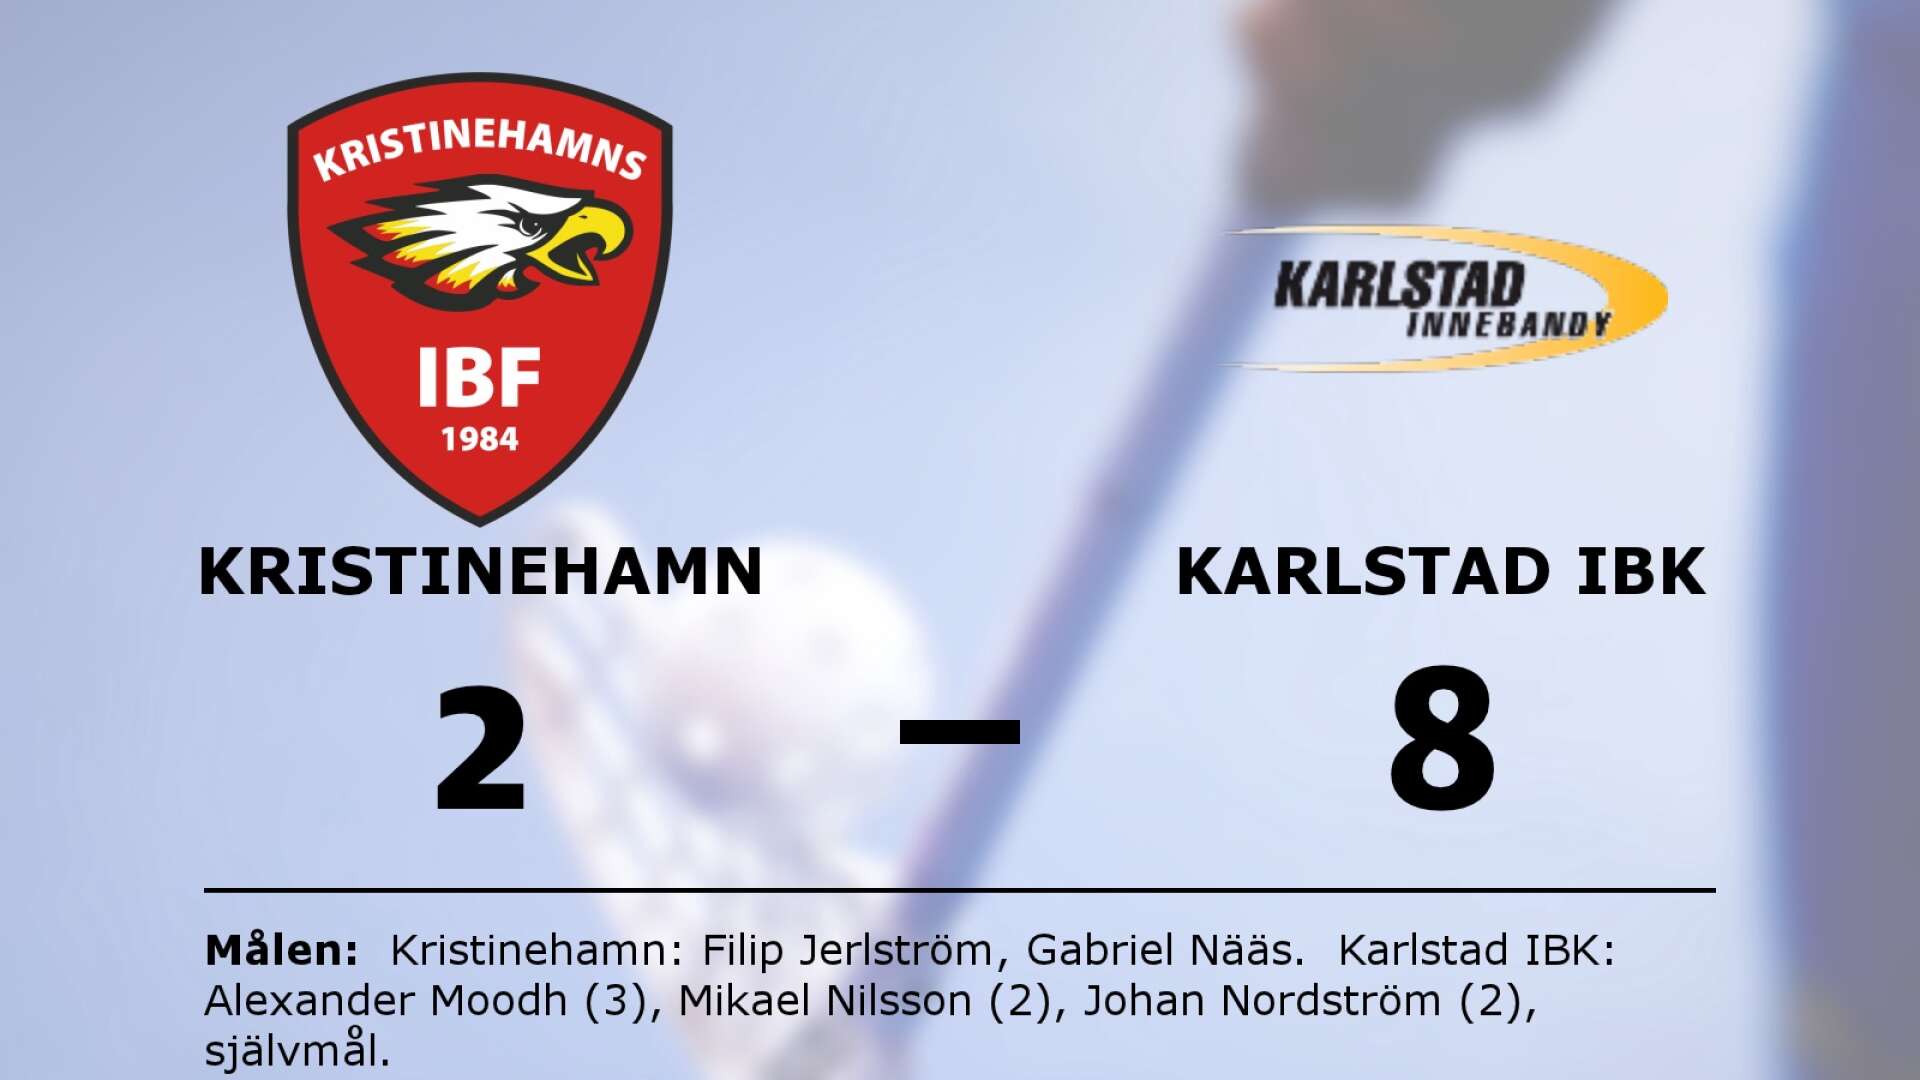 Kristinehamns IBF förlorade mot Karlstad IBK